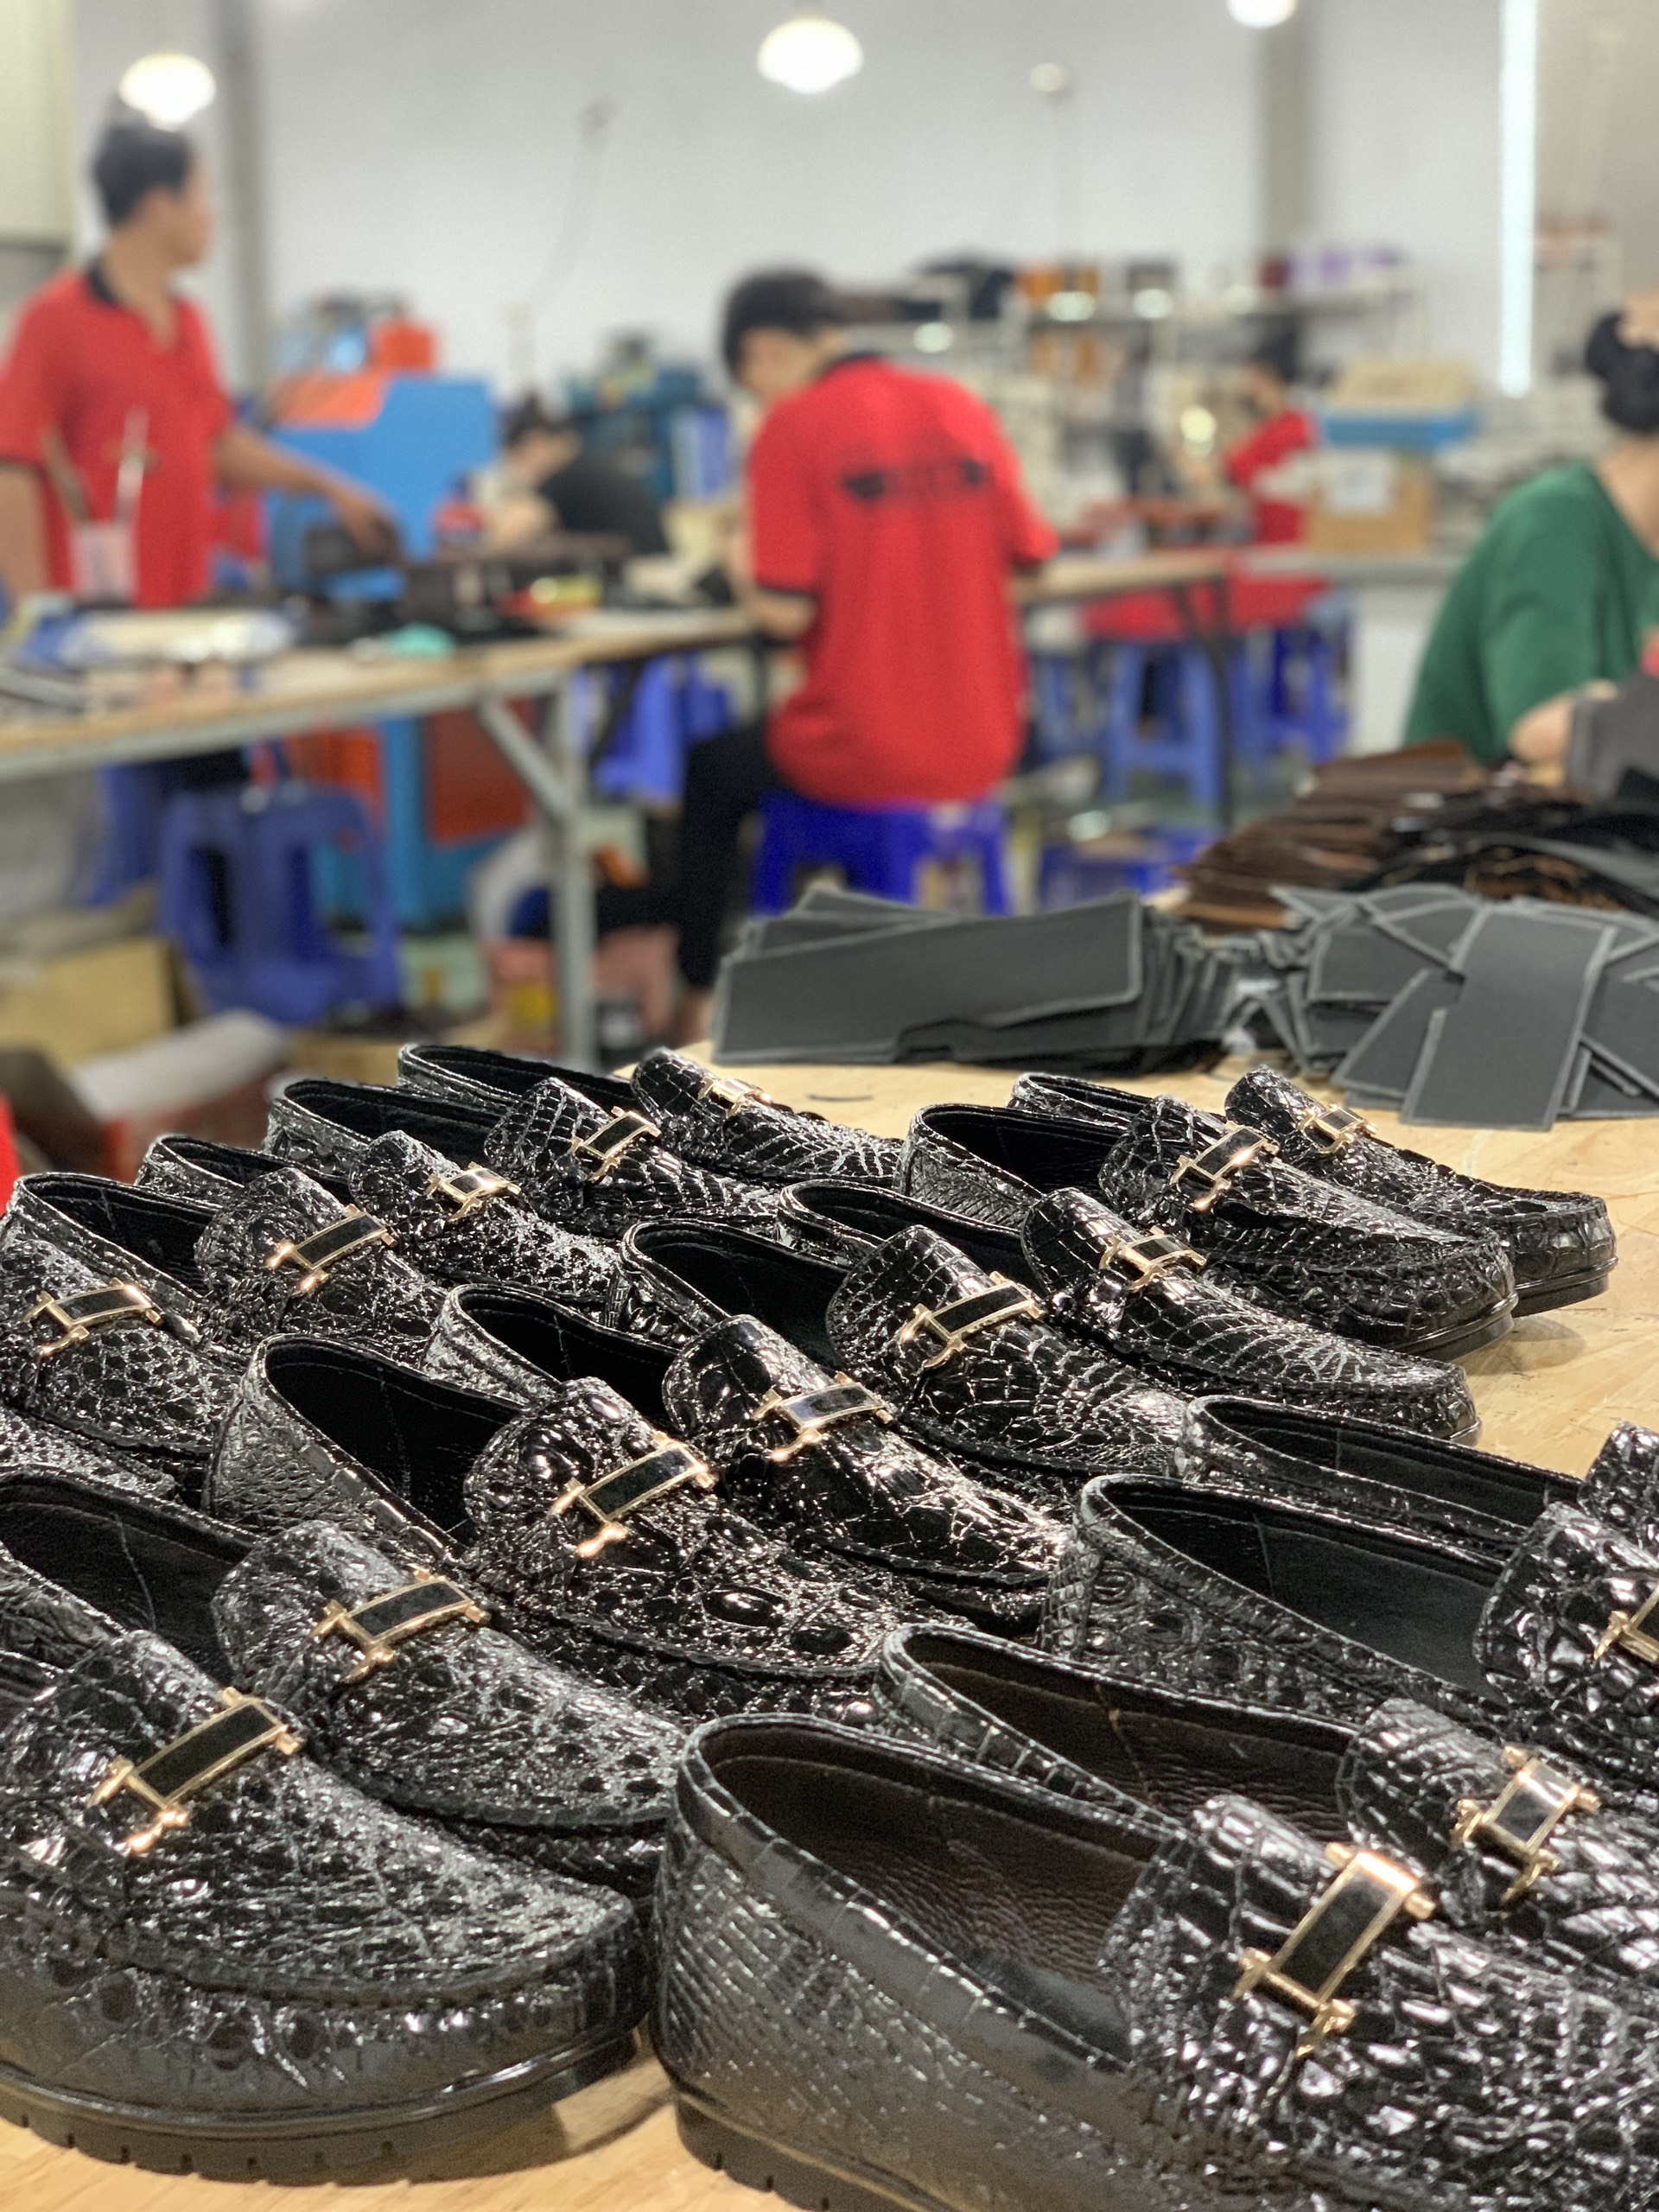 Xưởng sản xuất giày dép da bò thật - không qua trung gian